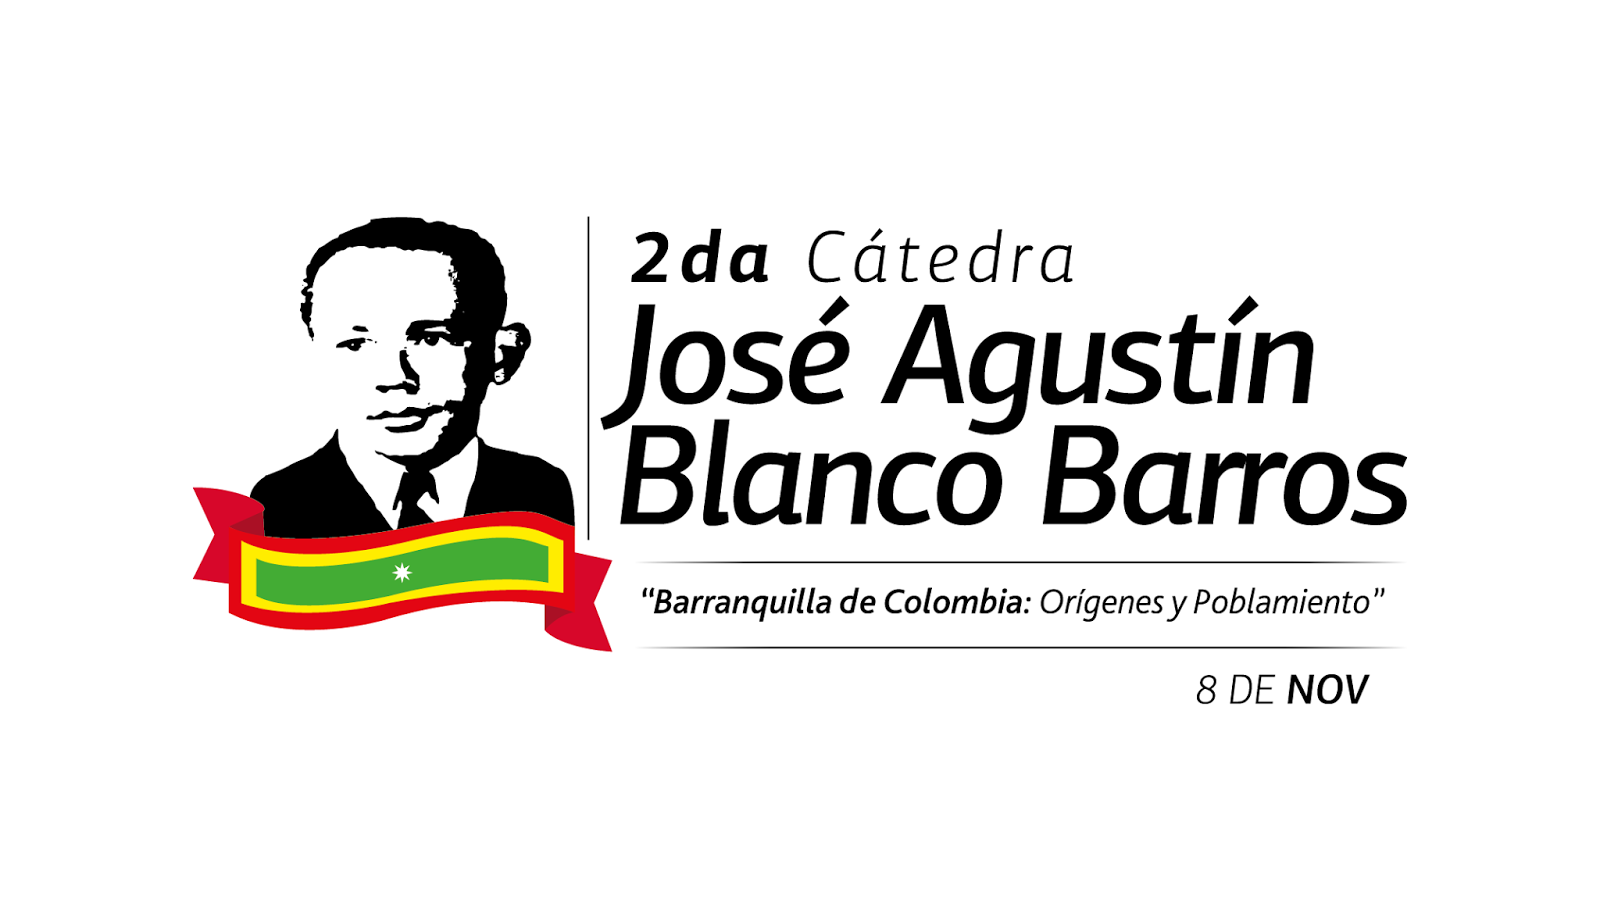 José Agustín Blanco Barros 